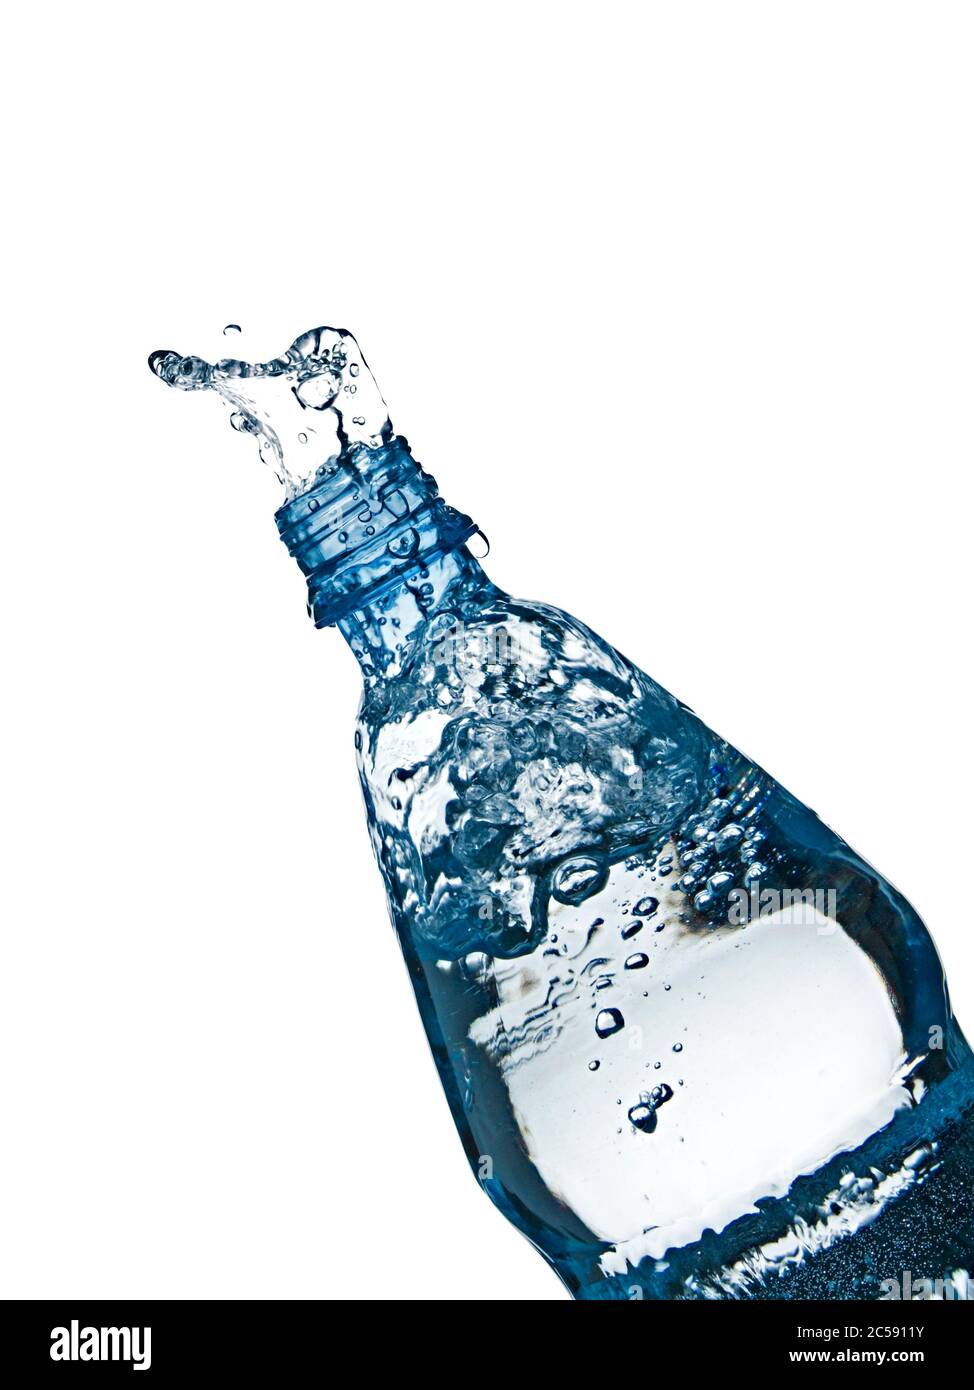 Mineralwasser, das aus einer Flasche spritzt Stockfoto